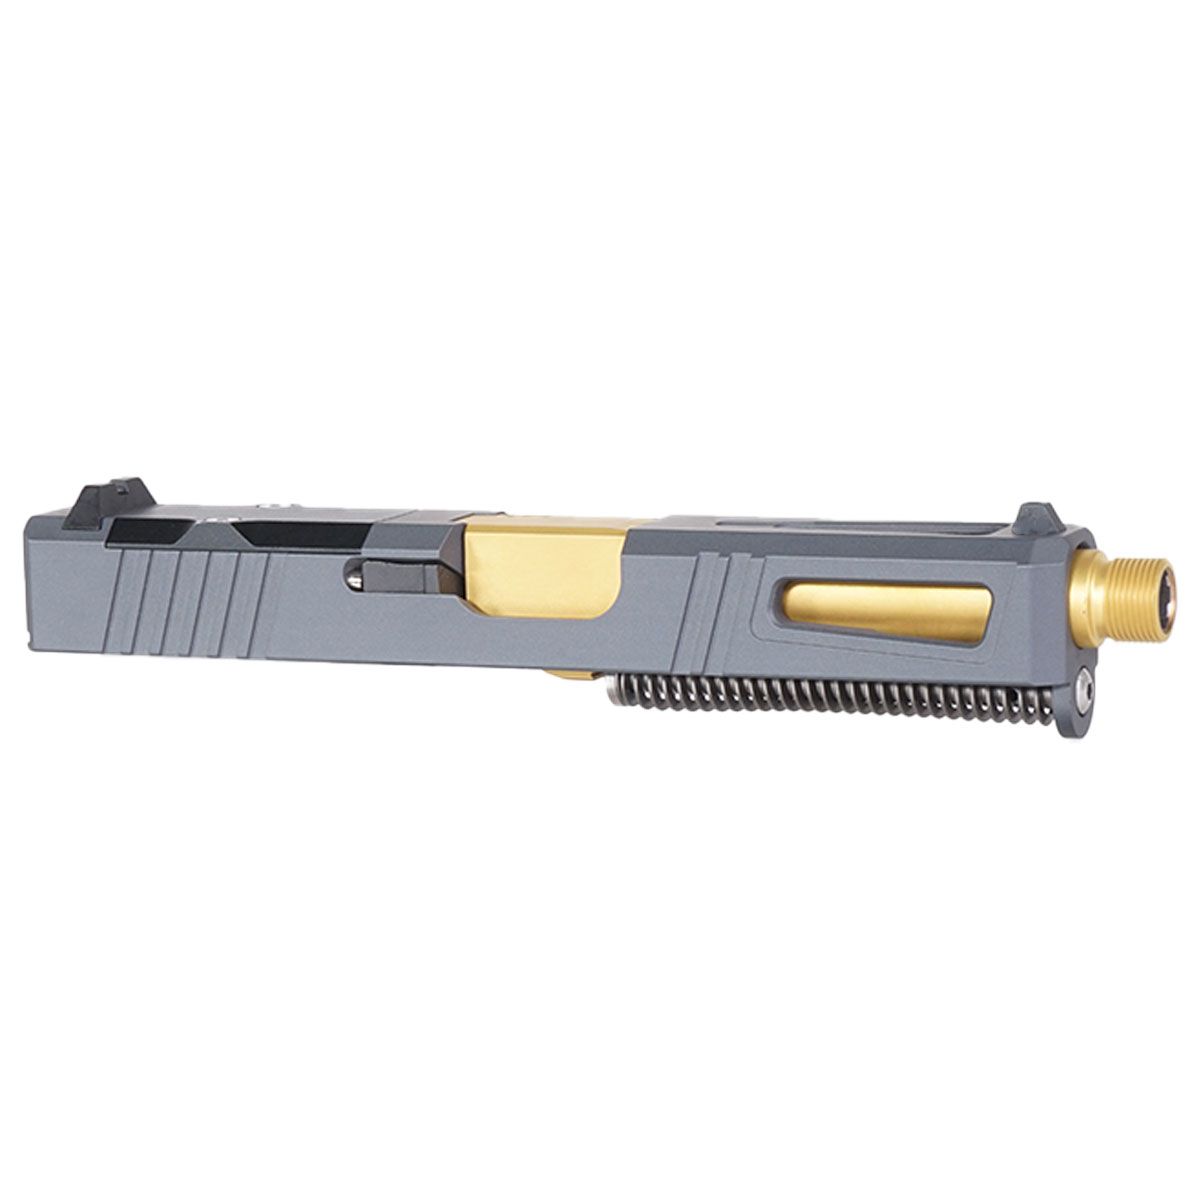 OTD 'Gold Strike-Suppressor Ready' 9mm Complete Slide Kit - Glock 19 Gen 1-3 Compatible